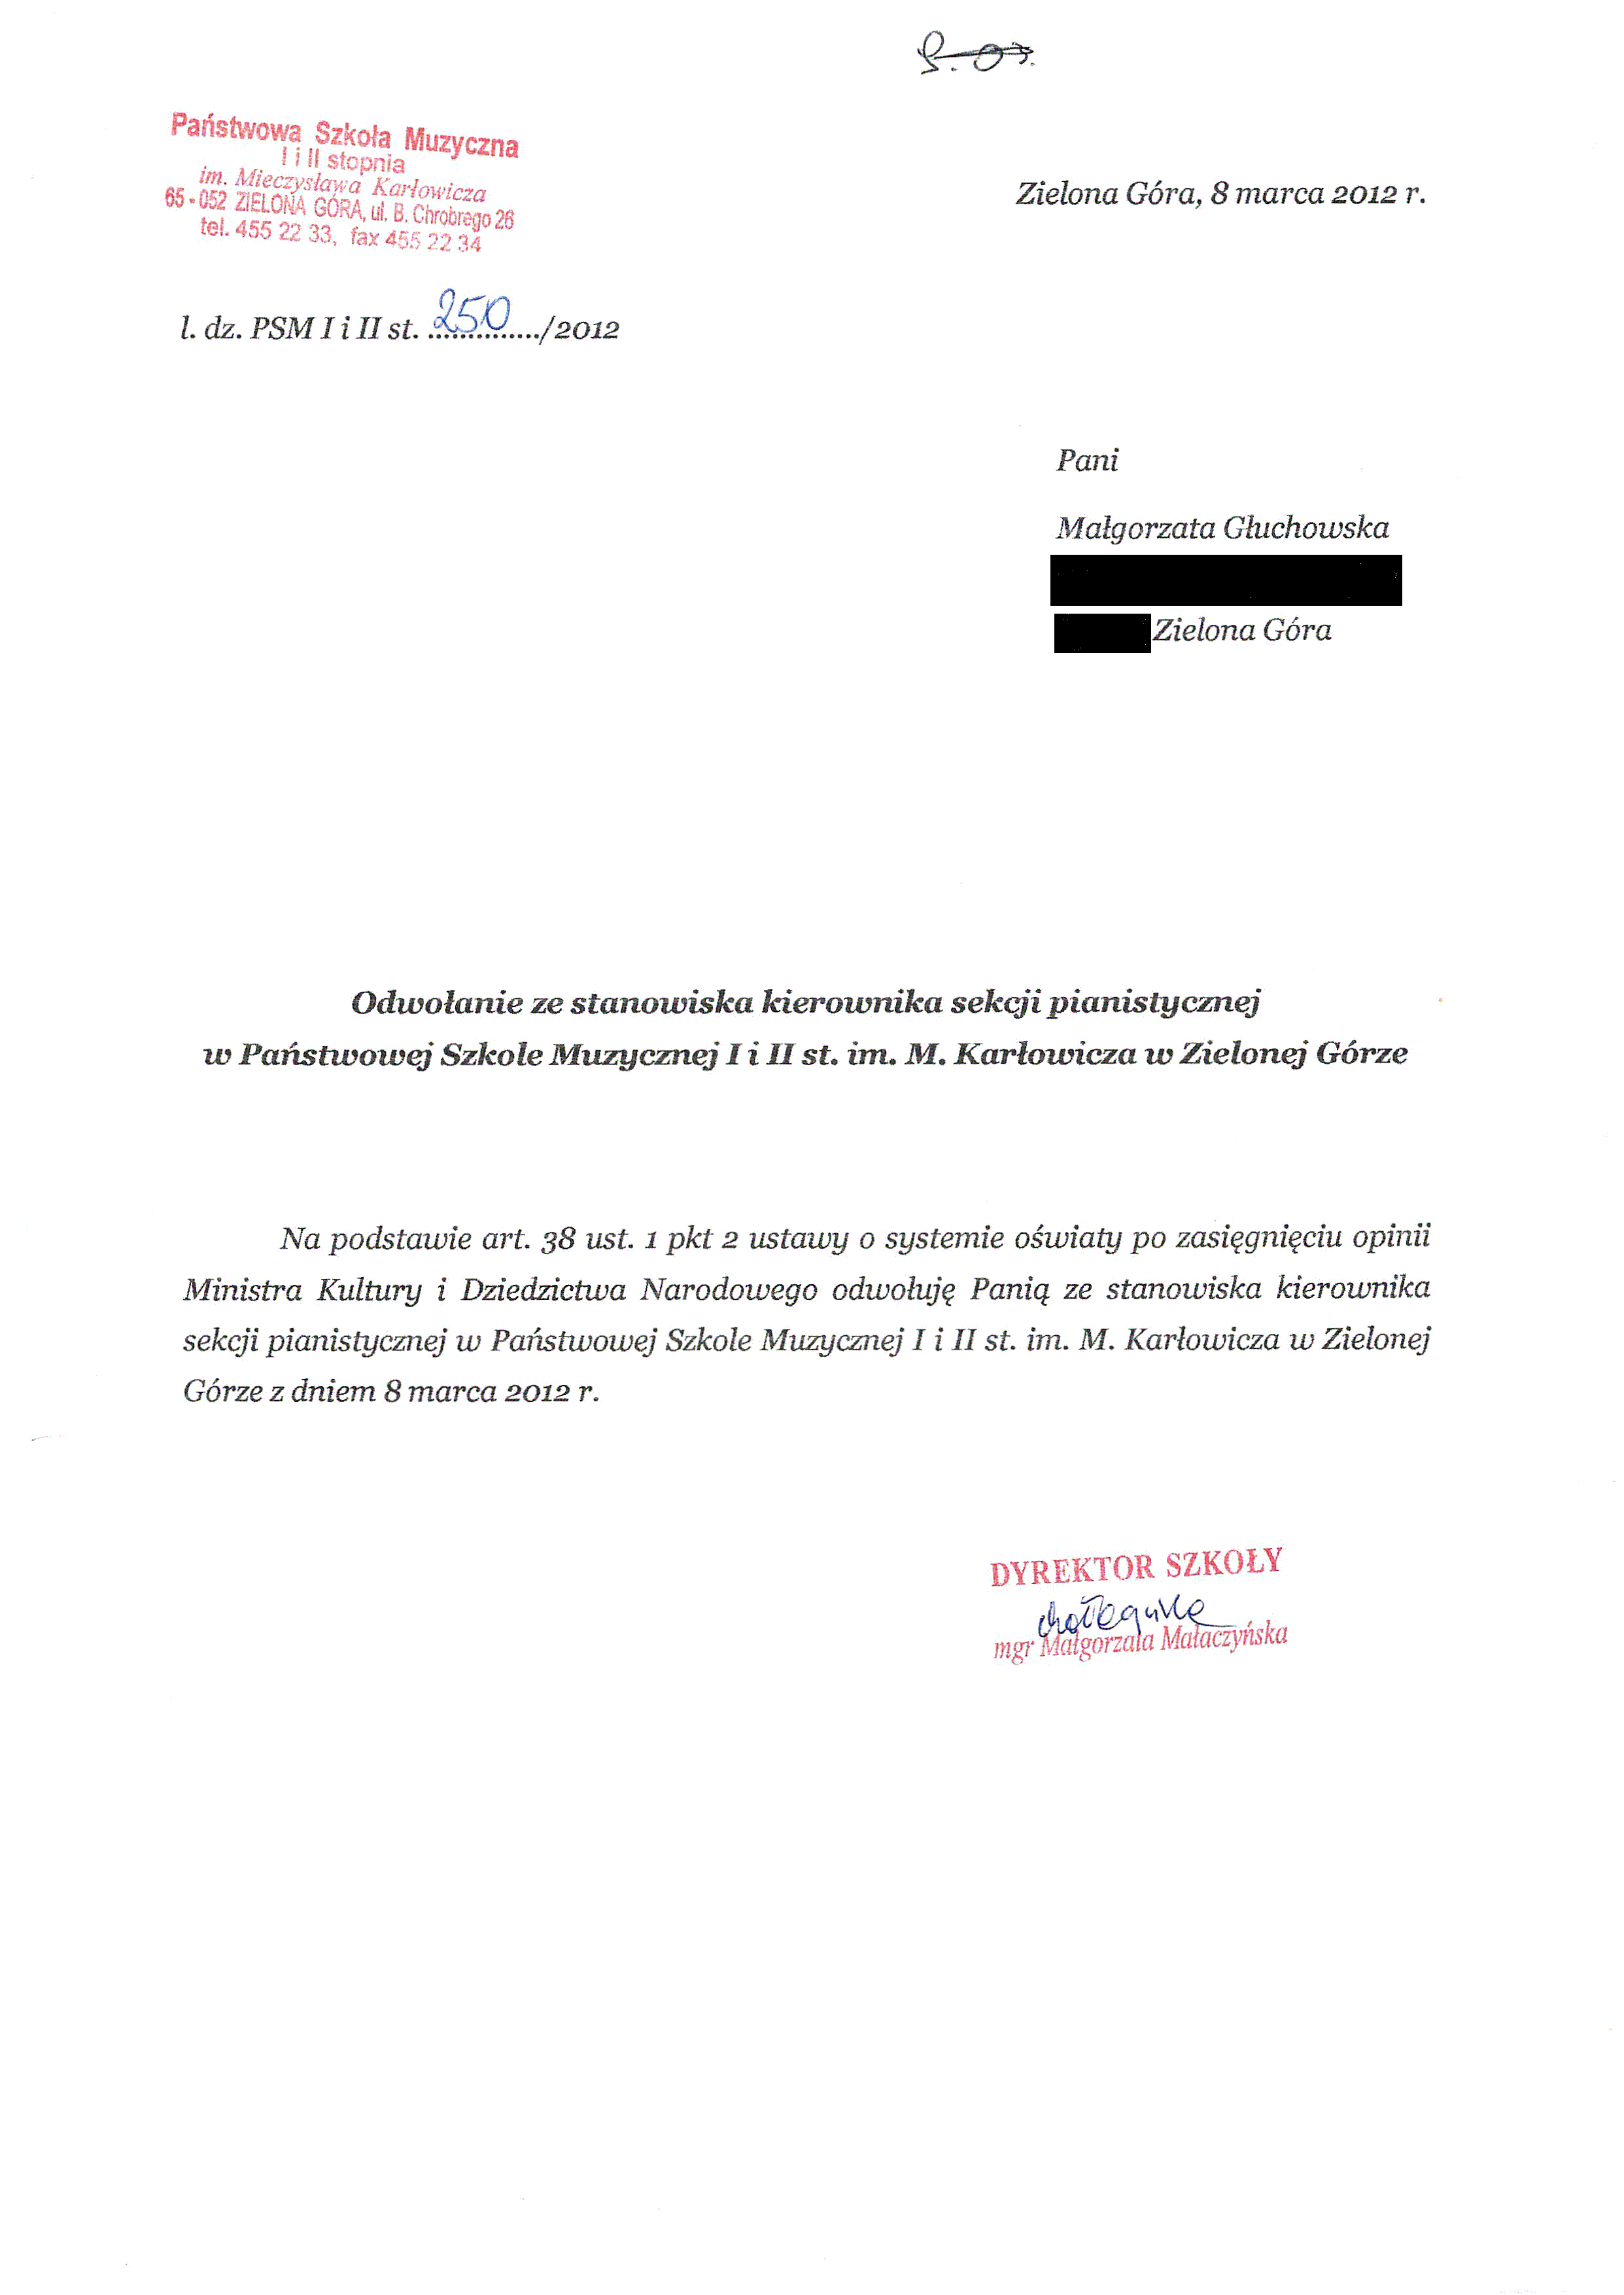 Pismo zwalniające Małgorzatę Głuchowską ze stanowiska kierownika sekcji 8 marca 2012